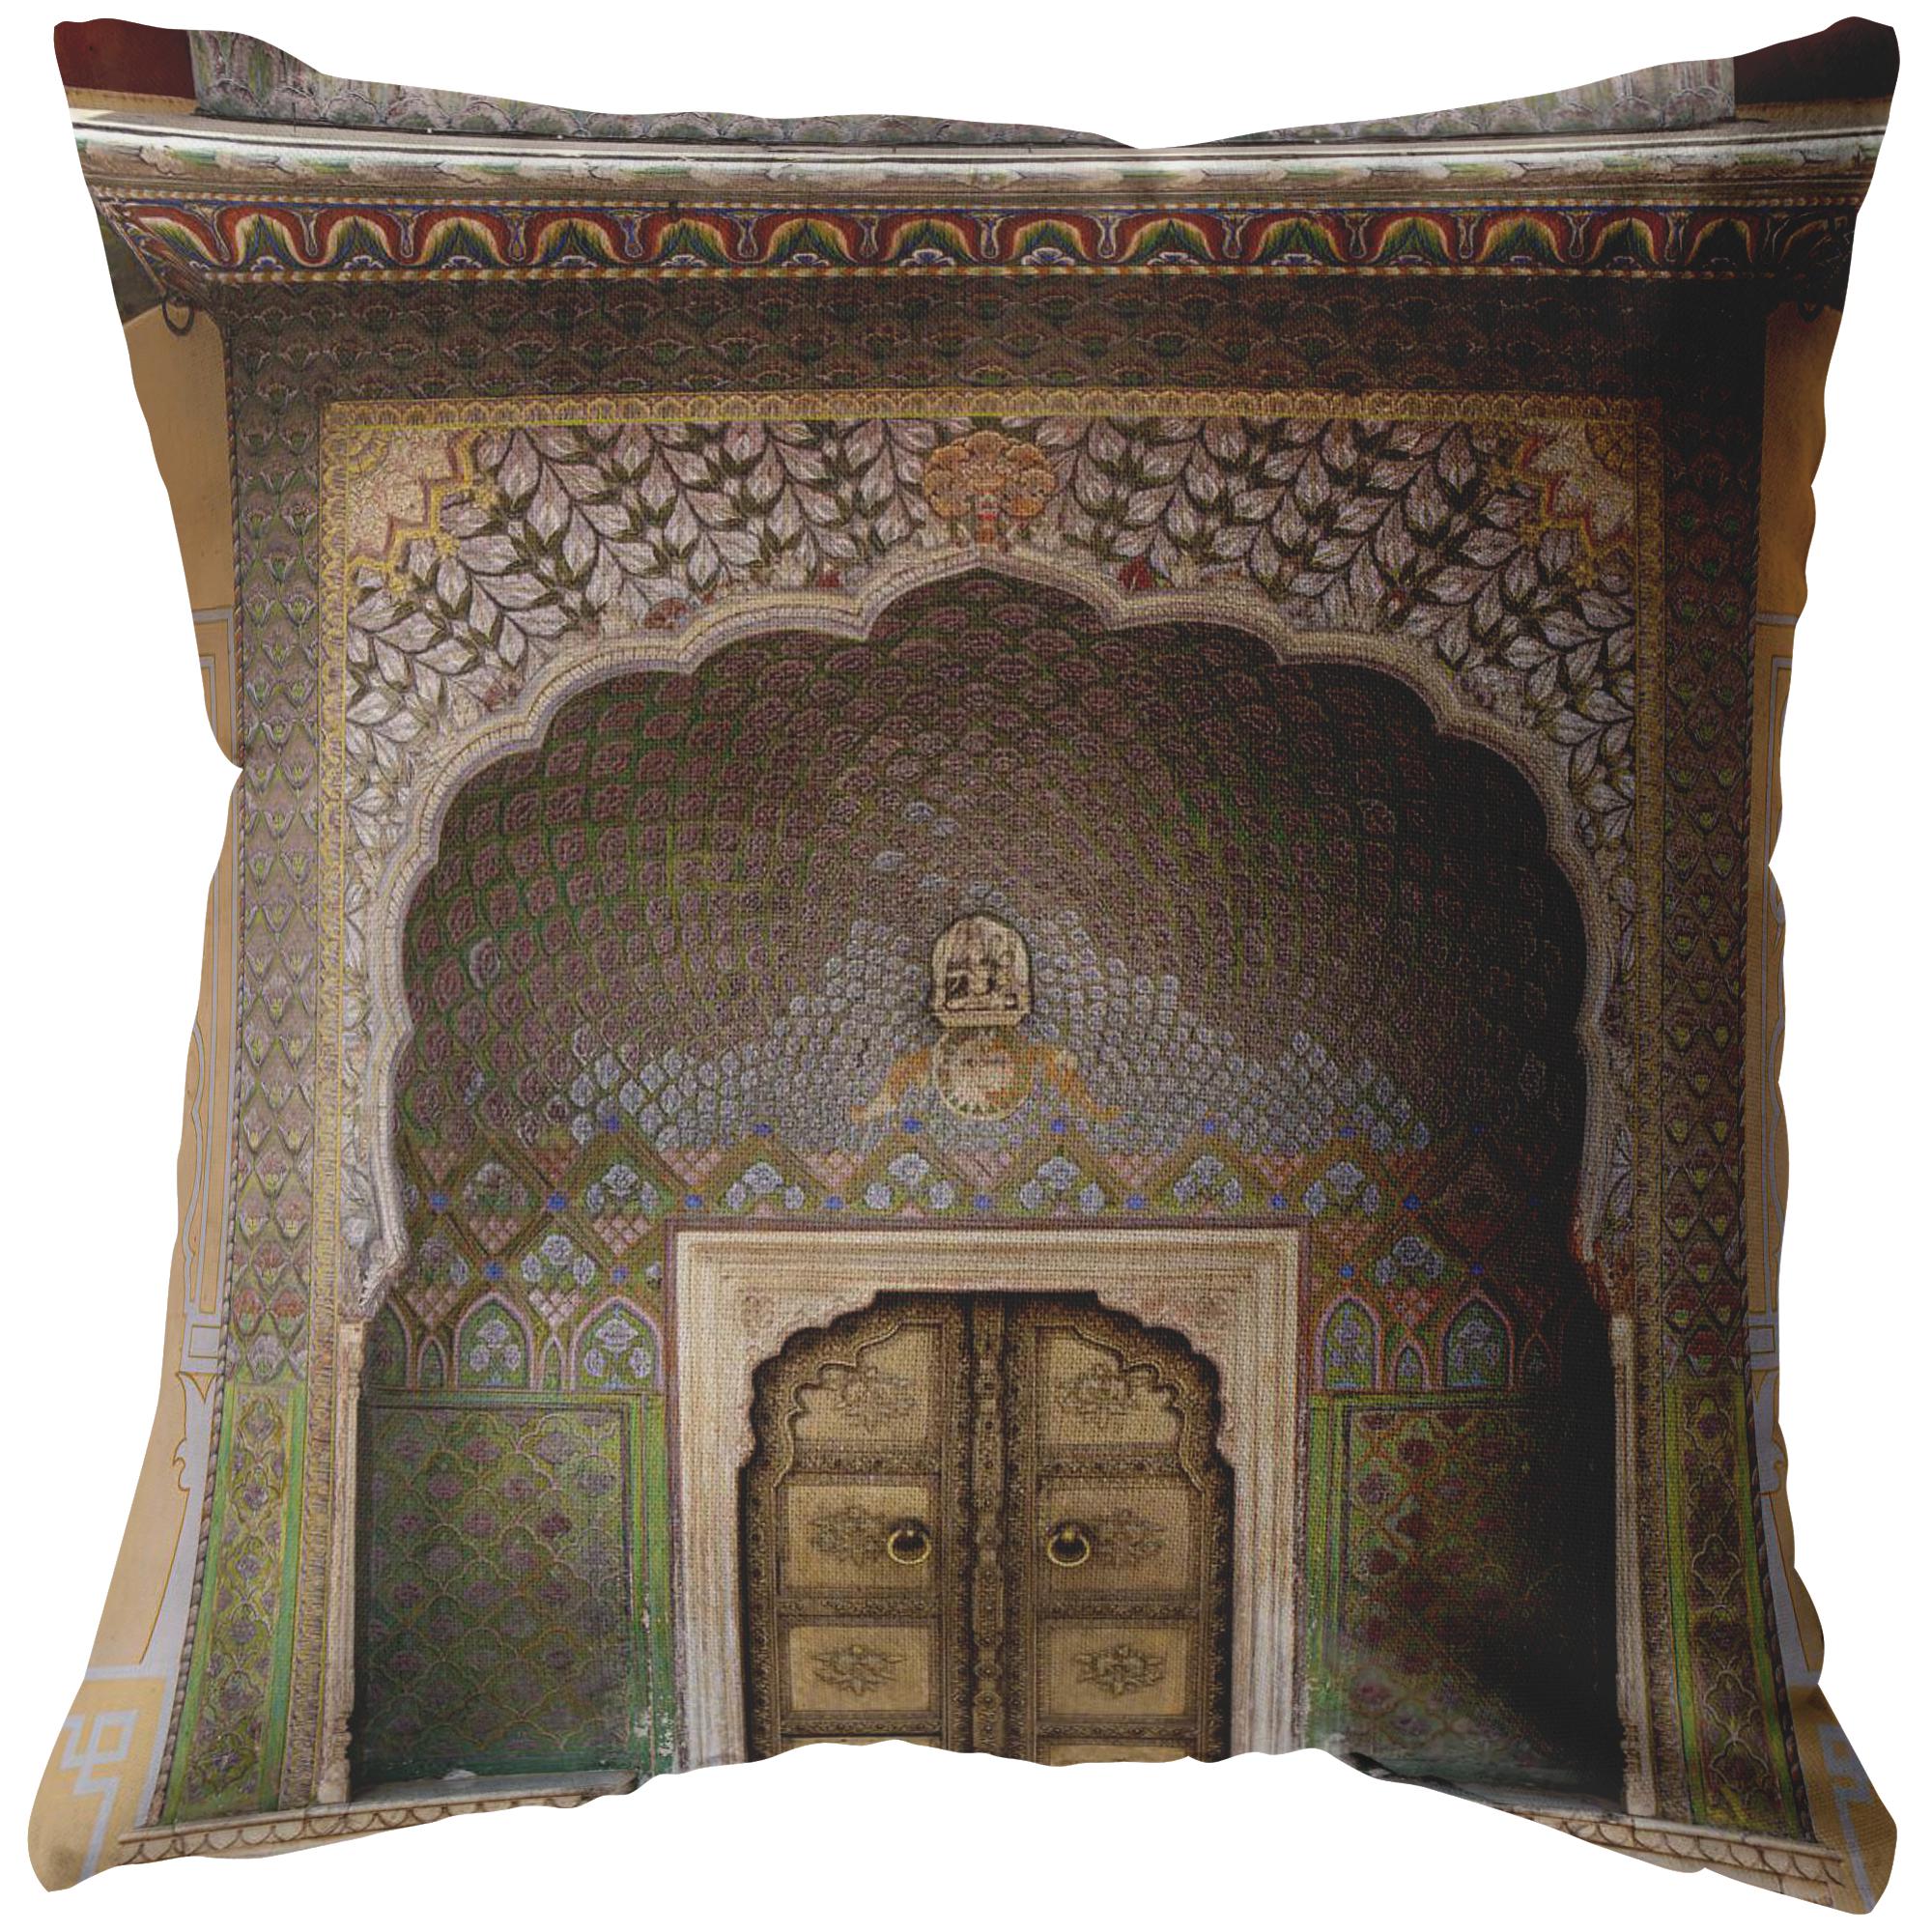 Decorative Throw Pillow _ City Palace Jaipur Yellow Door - Azra's Voyage